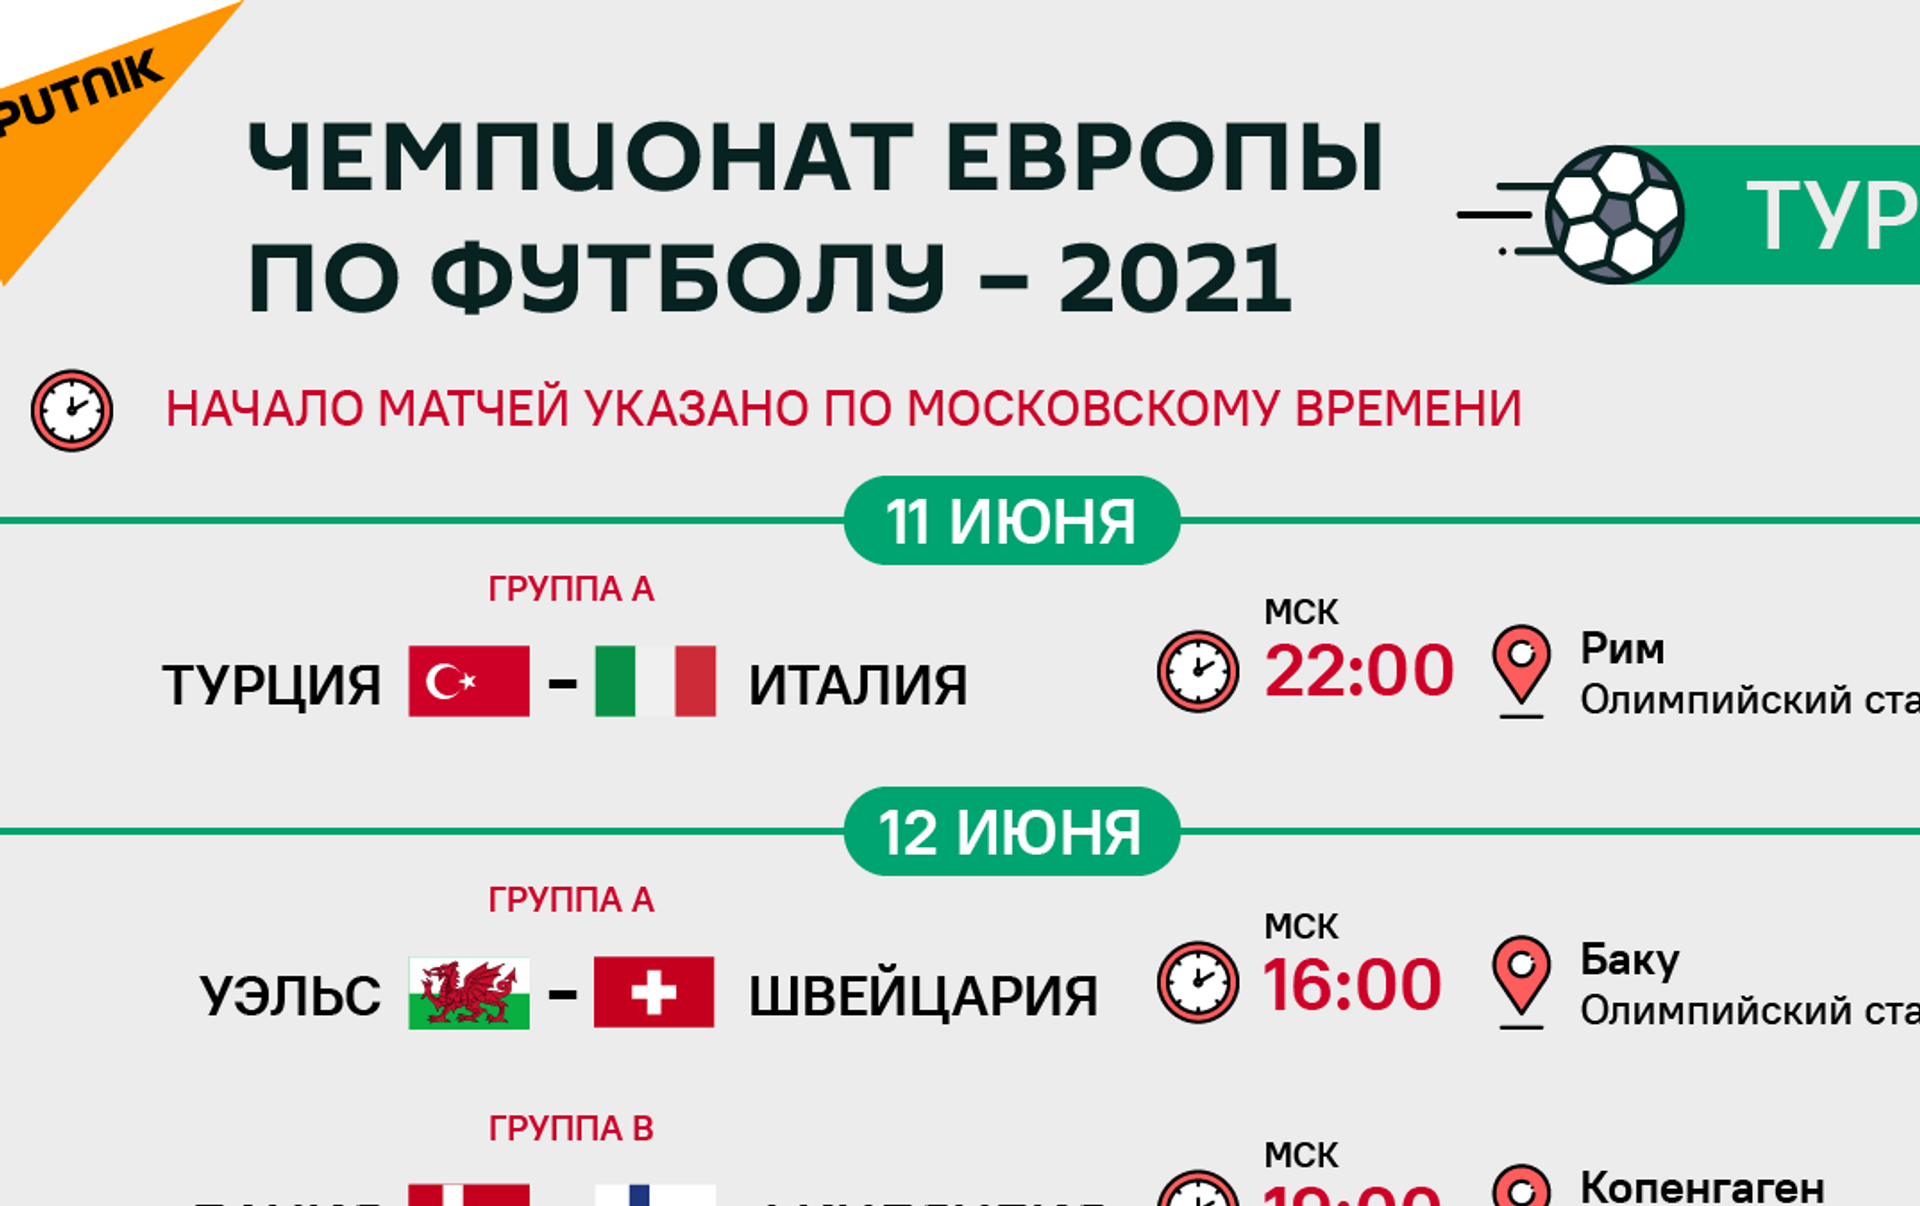 Футбол 2020 турнирная матчи. Евро-2020 расписание матчей. Евро-2020 расписание матчей на сегодня. Квалификация евро-2020 расписание матчей 2021. Таблица матчей в Щецине.